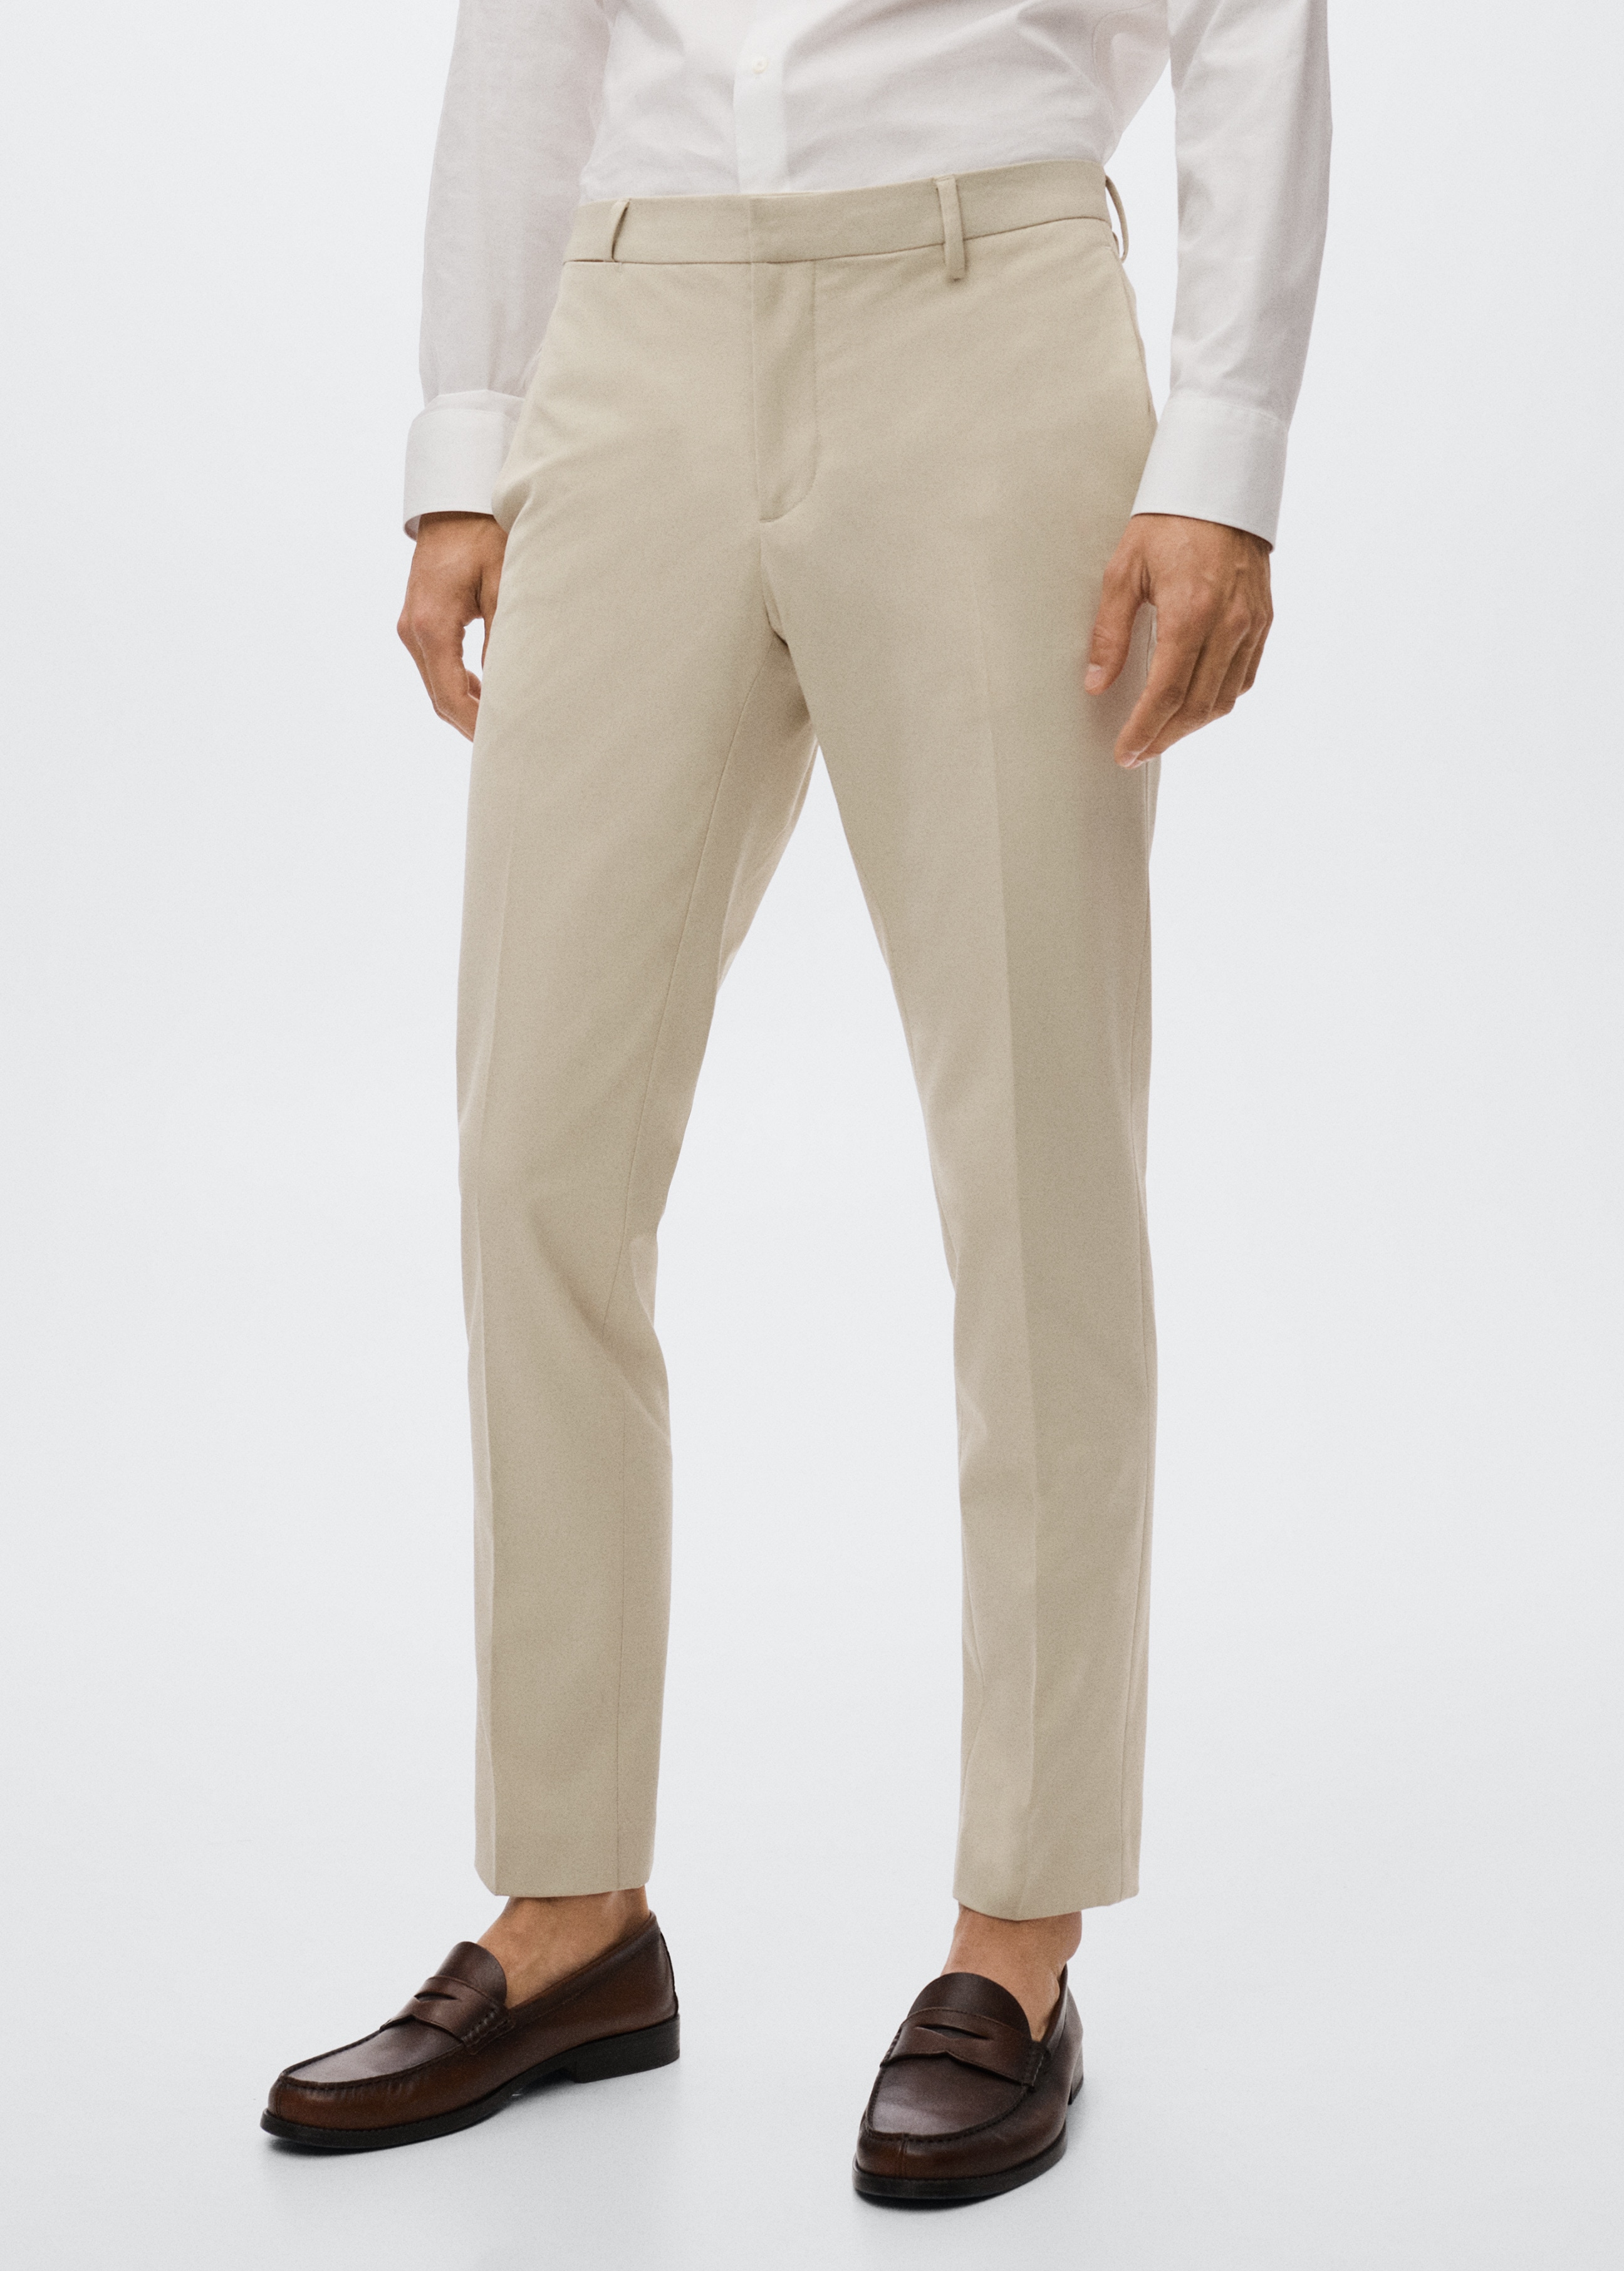 Super slim fit suit trousers - Medium plane